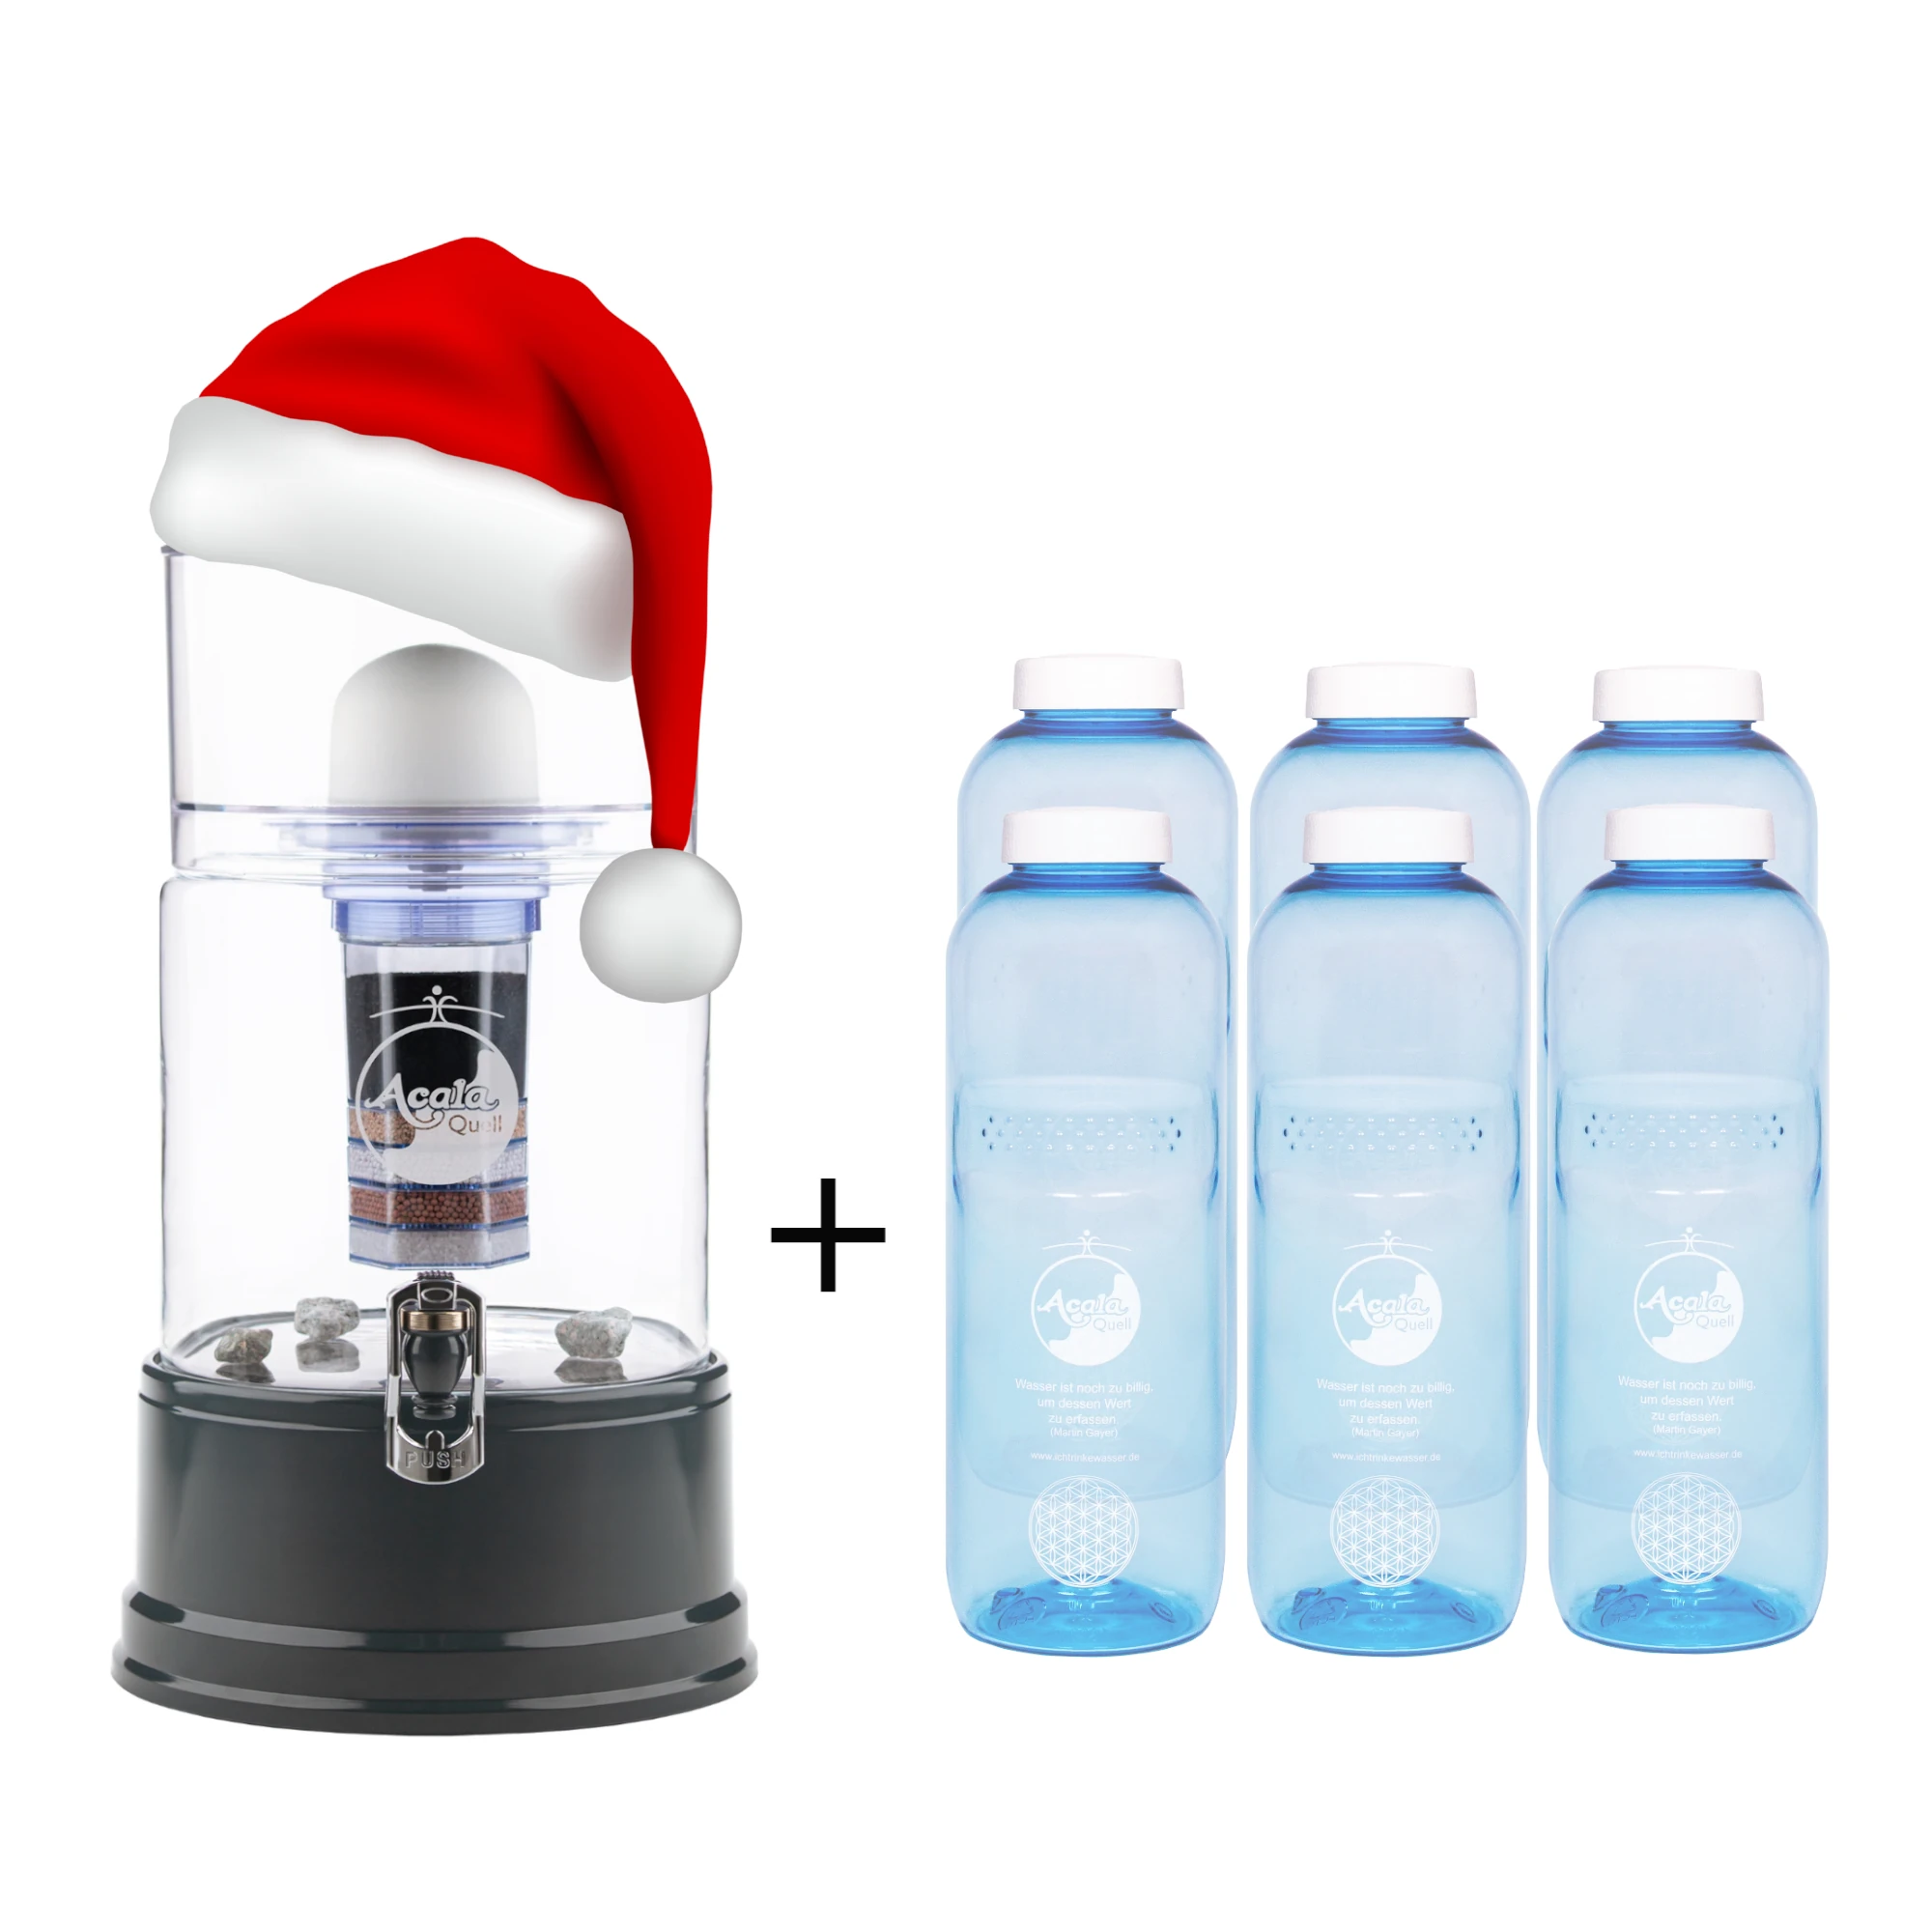 Standwasserfilter von Acala mit Glastank in kristallklar, Deckel, Sockel und Wasserhahn in anthrazit. Daneben sechs blaue Tritan Trinkflaschen mit weißem Schraubdeckel. Der Filter hat eine Weihnachtsmann Mütze auf. Das Bild zeigt ein Weihnachtsangebot.